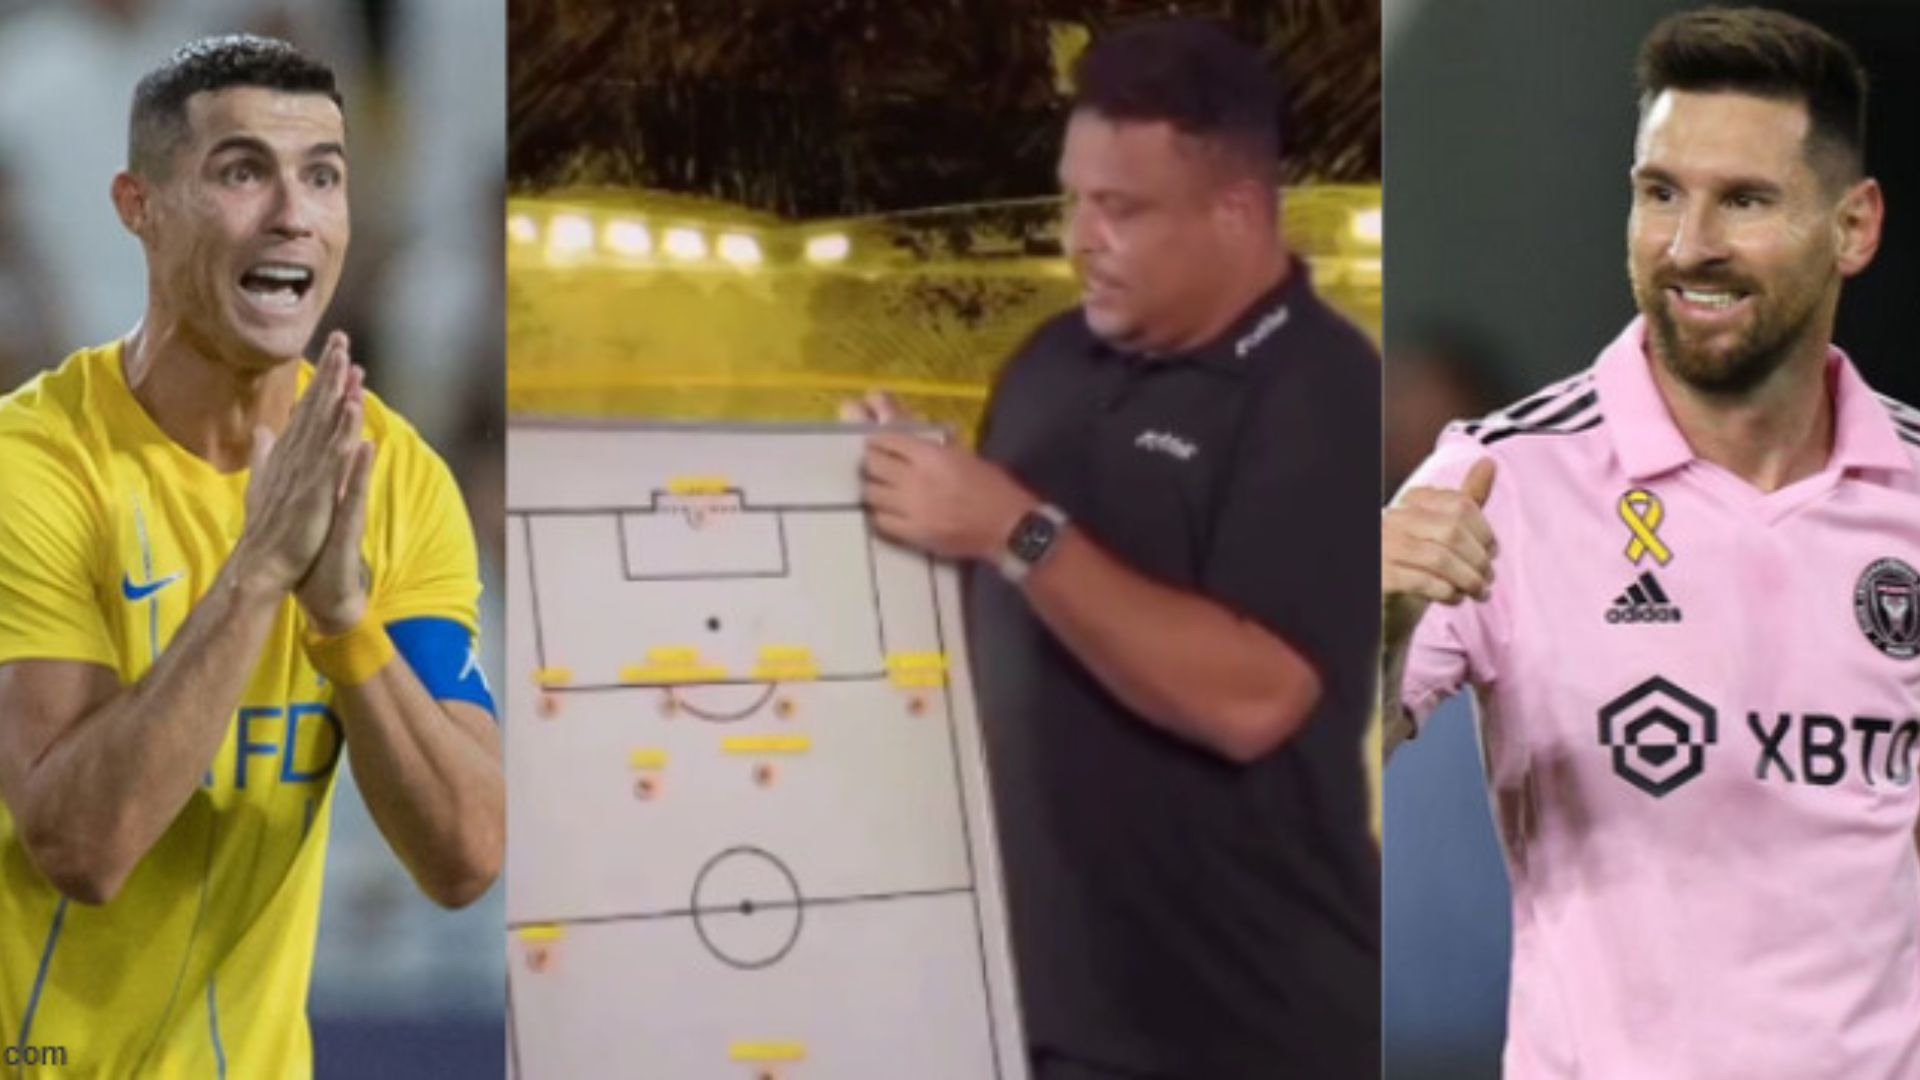 El exjugador de la selección brasileña, Ronaldo Nazario, eligió su XI ideal con un video colgado en sus redes sociales. (Foto Prensa Libre: Captura de pantalla)